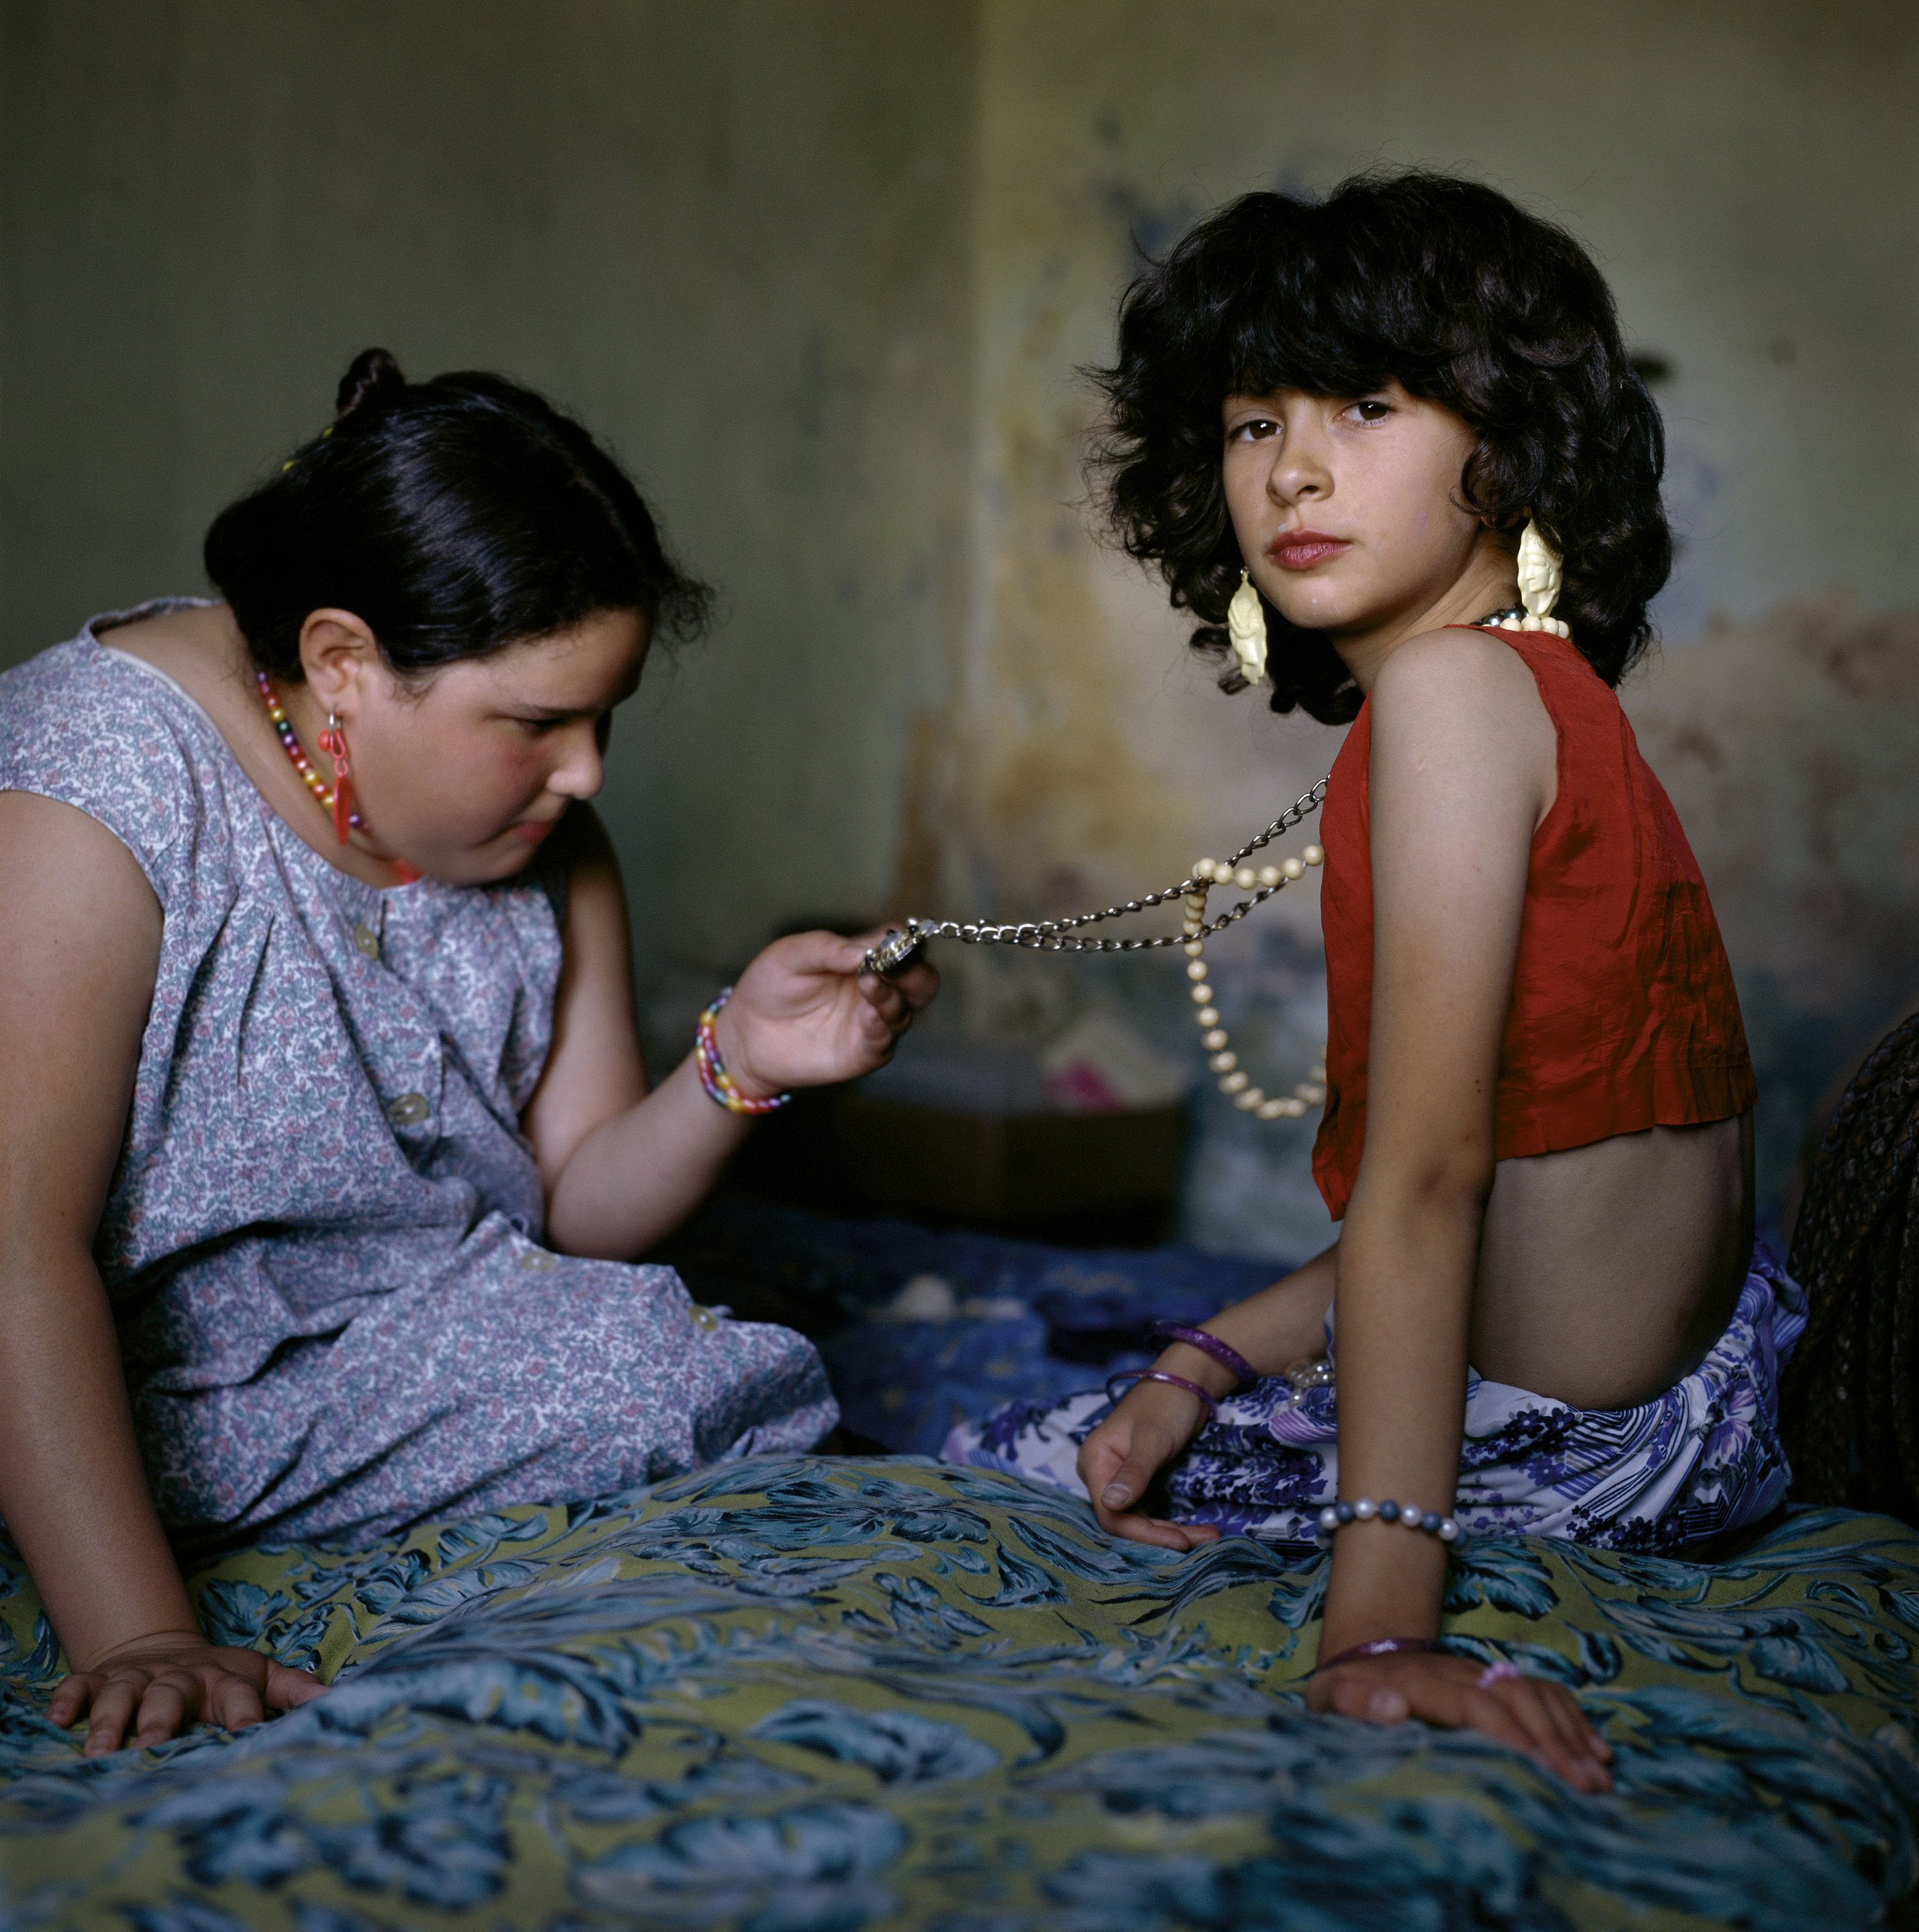 The Necklace, Buenos Aires, Argentina, 1999 © Alessandra Sanguinetti/Magnum Photos